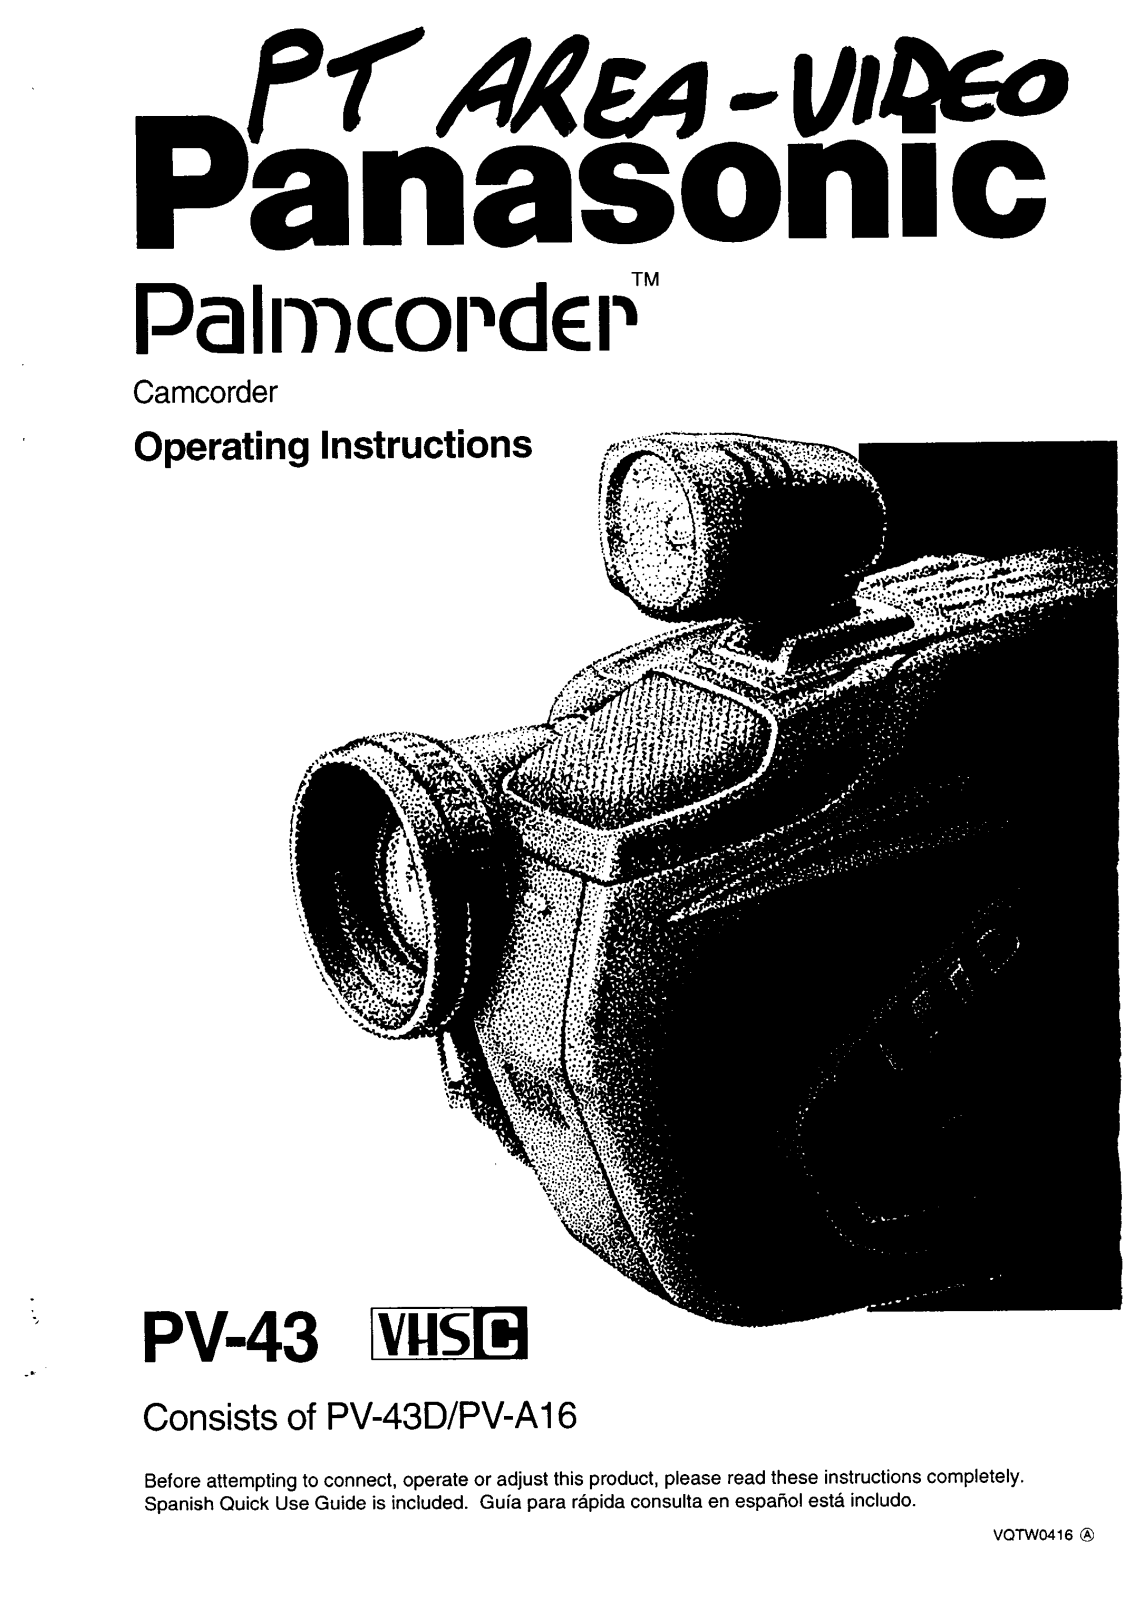 Panasonic PV-43 Operation Manual